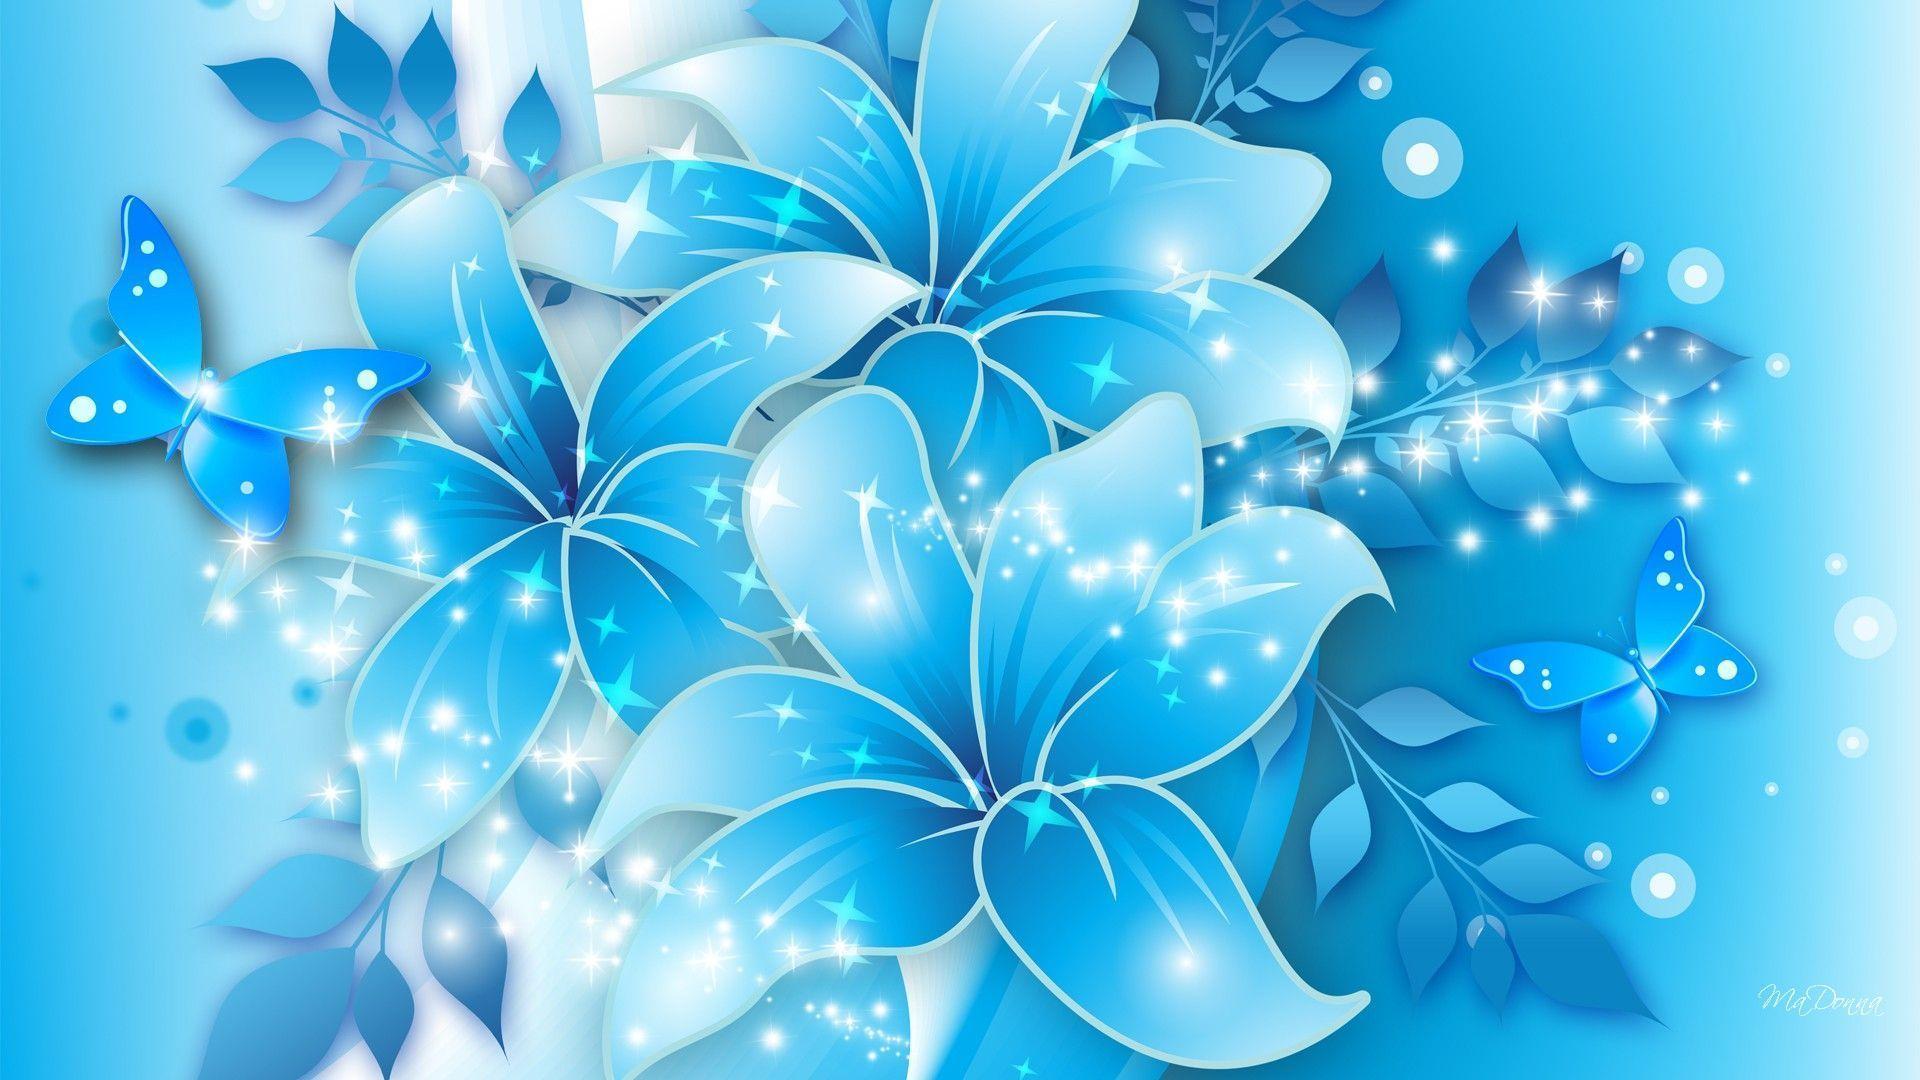 Wallpaper For > Light Blue Flower Background Design